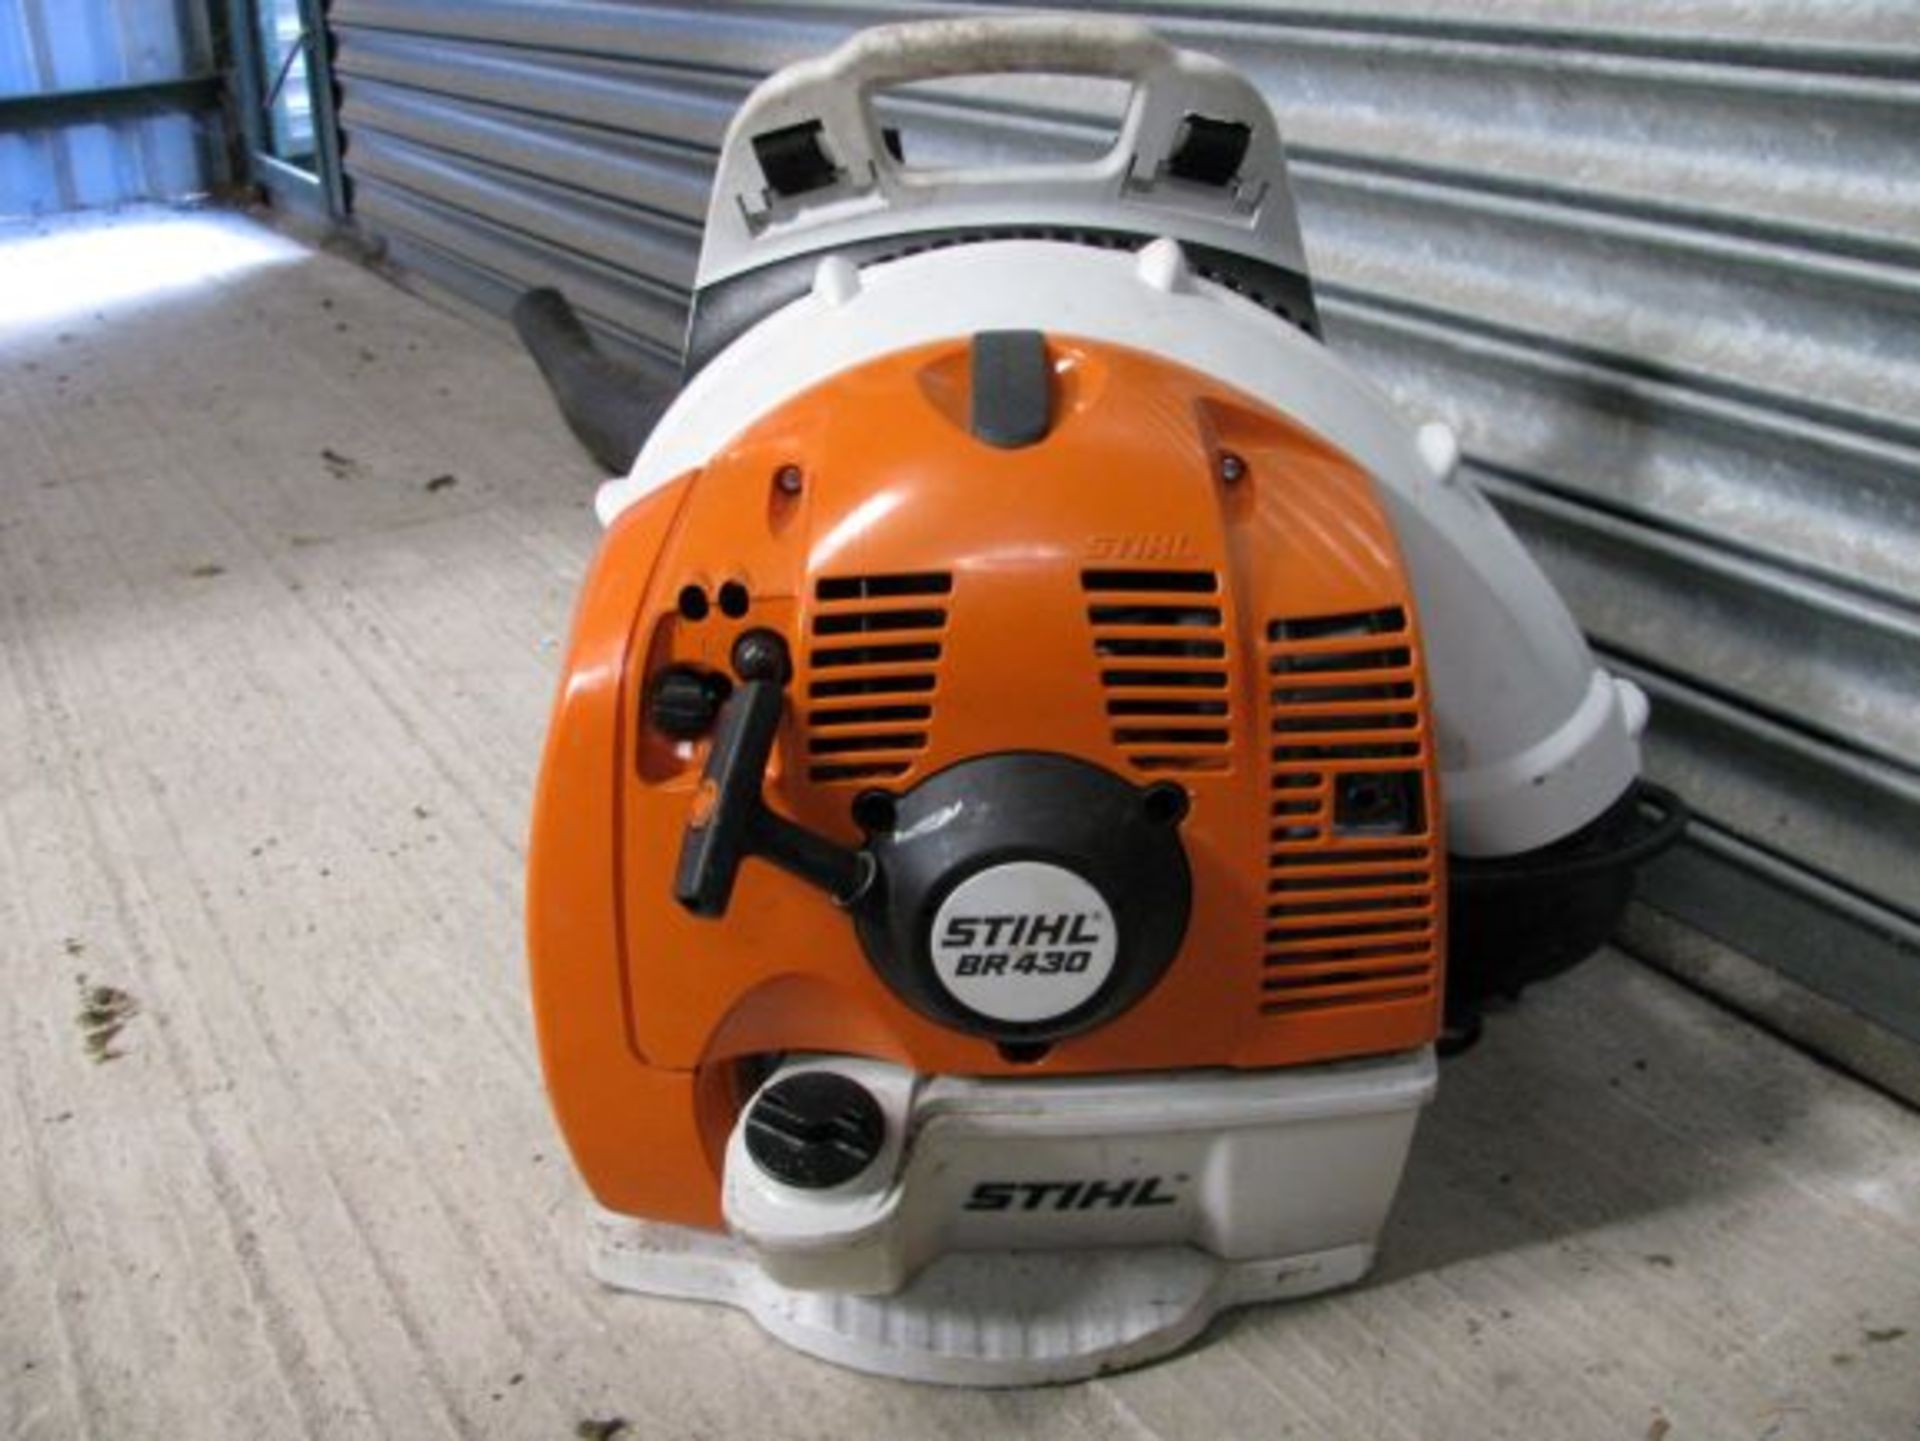 Stihl BR430 petrol back pack leaf blower - Image 2 of 2